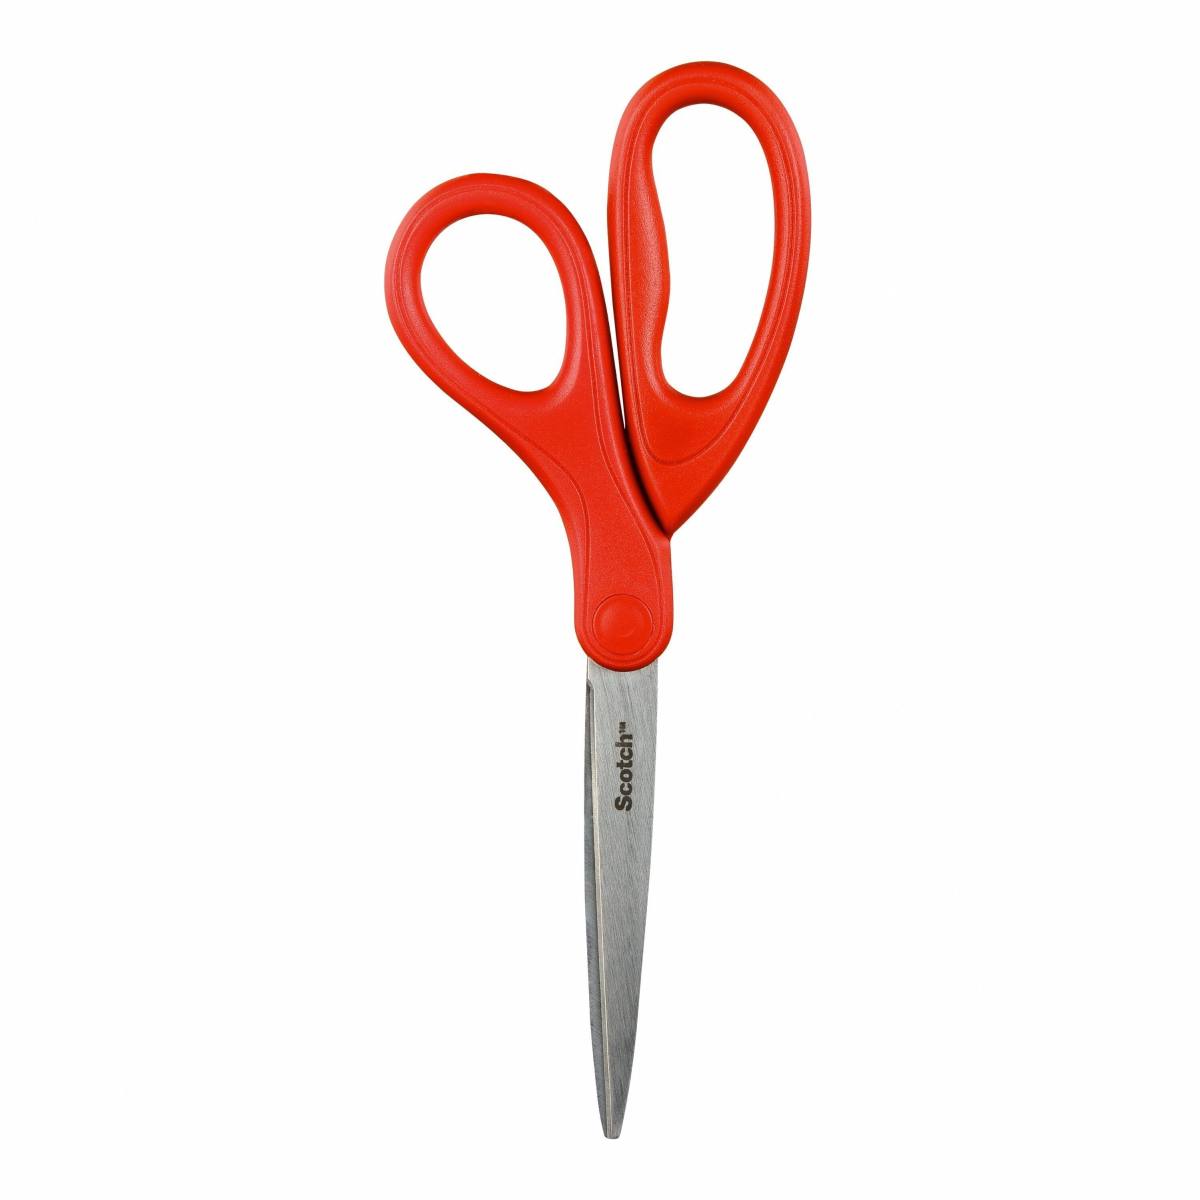 3M Scotch universal scissors red 1 per pack 18 cm